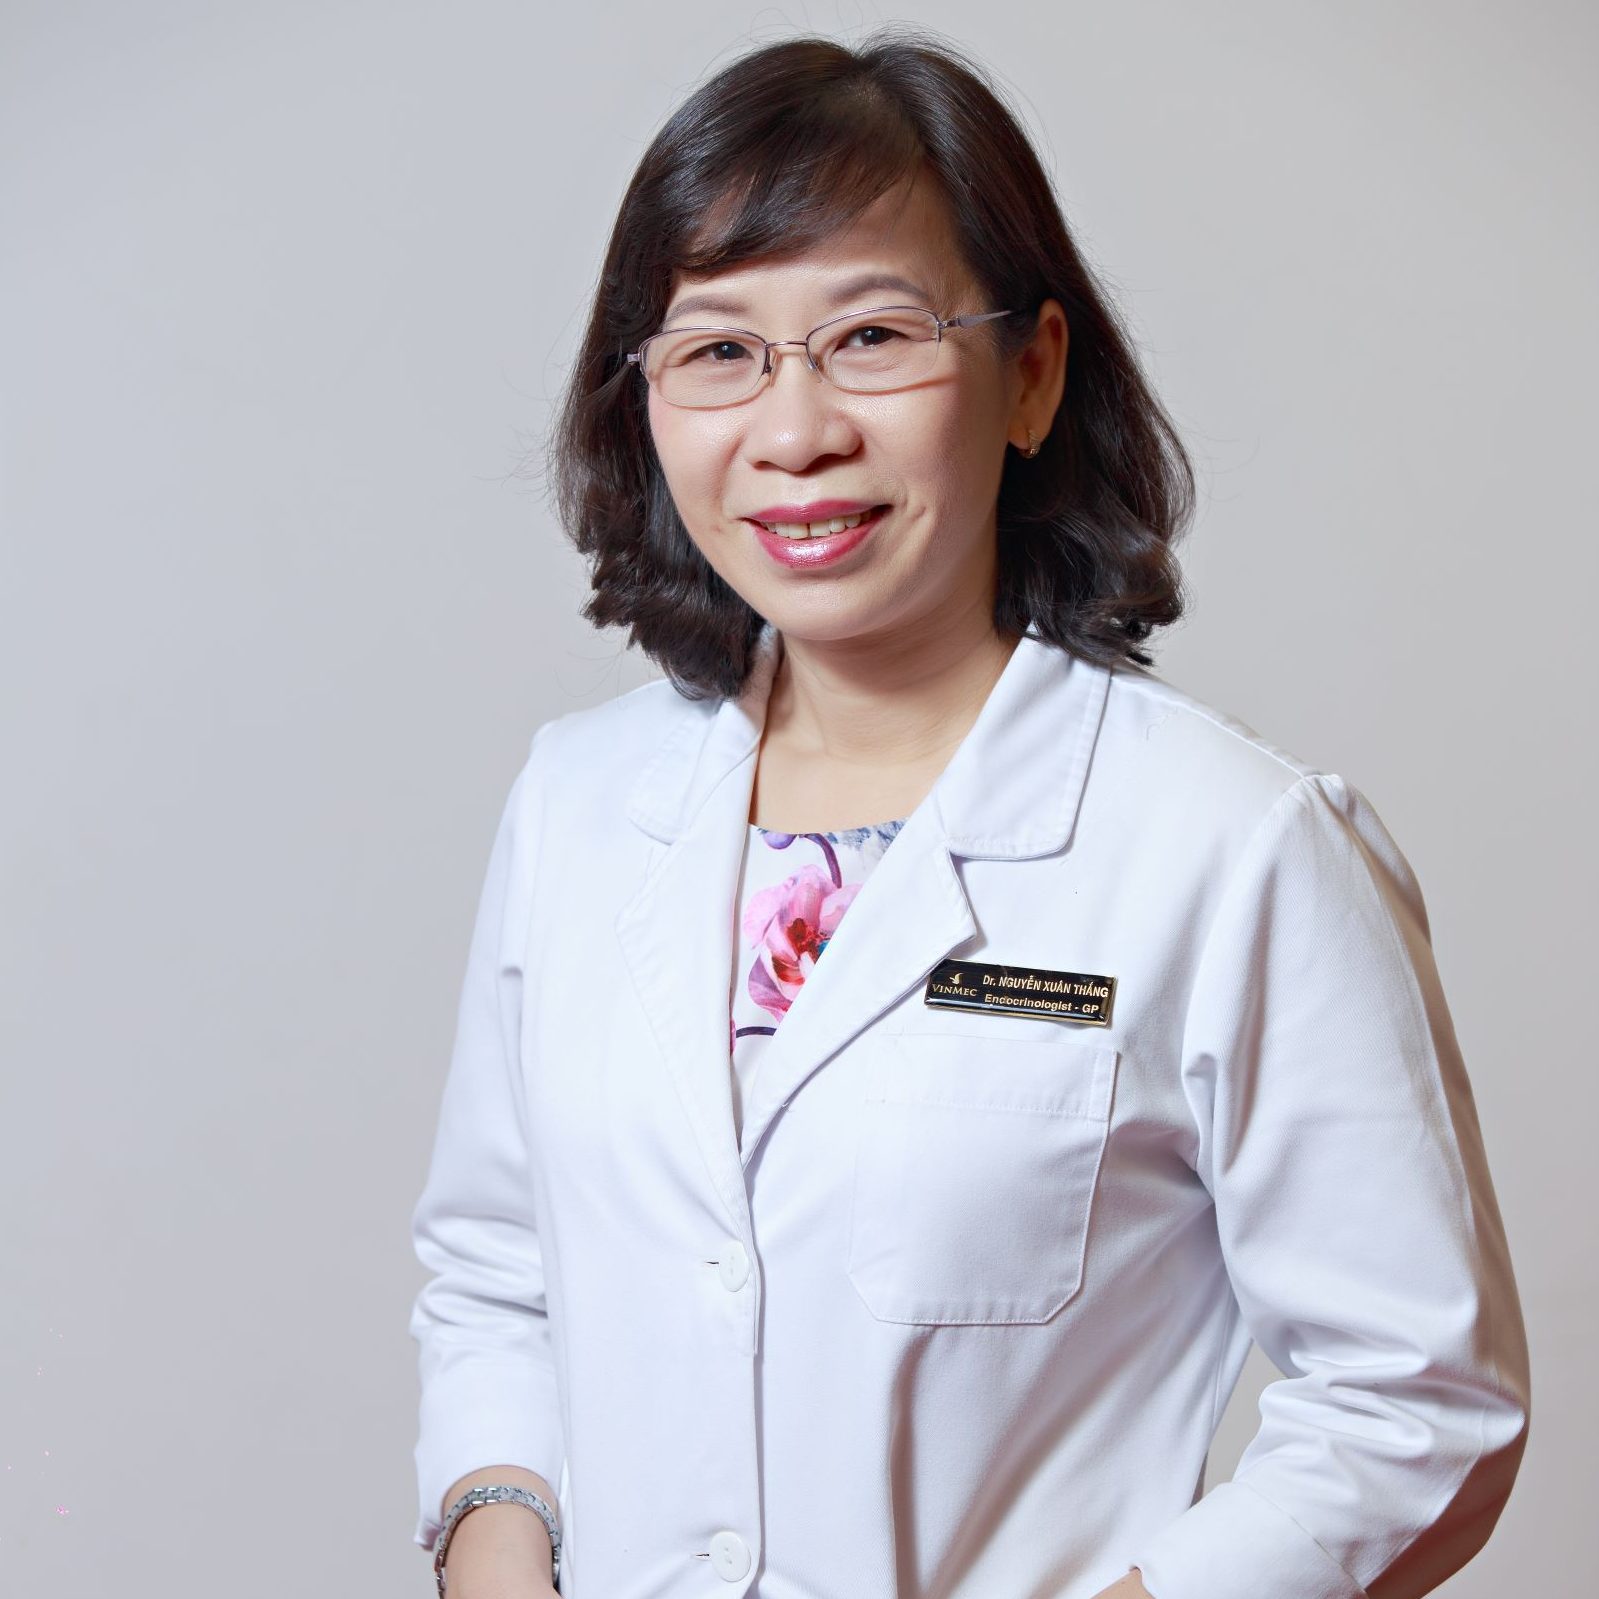 Bác sĩ chuyên khoa cấp II. Nguyễn Xuân Thắng